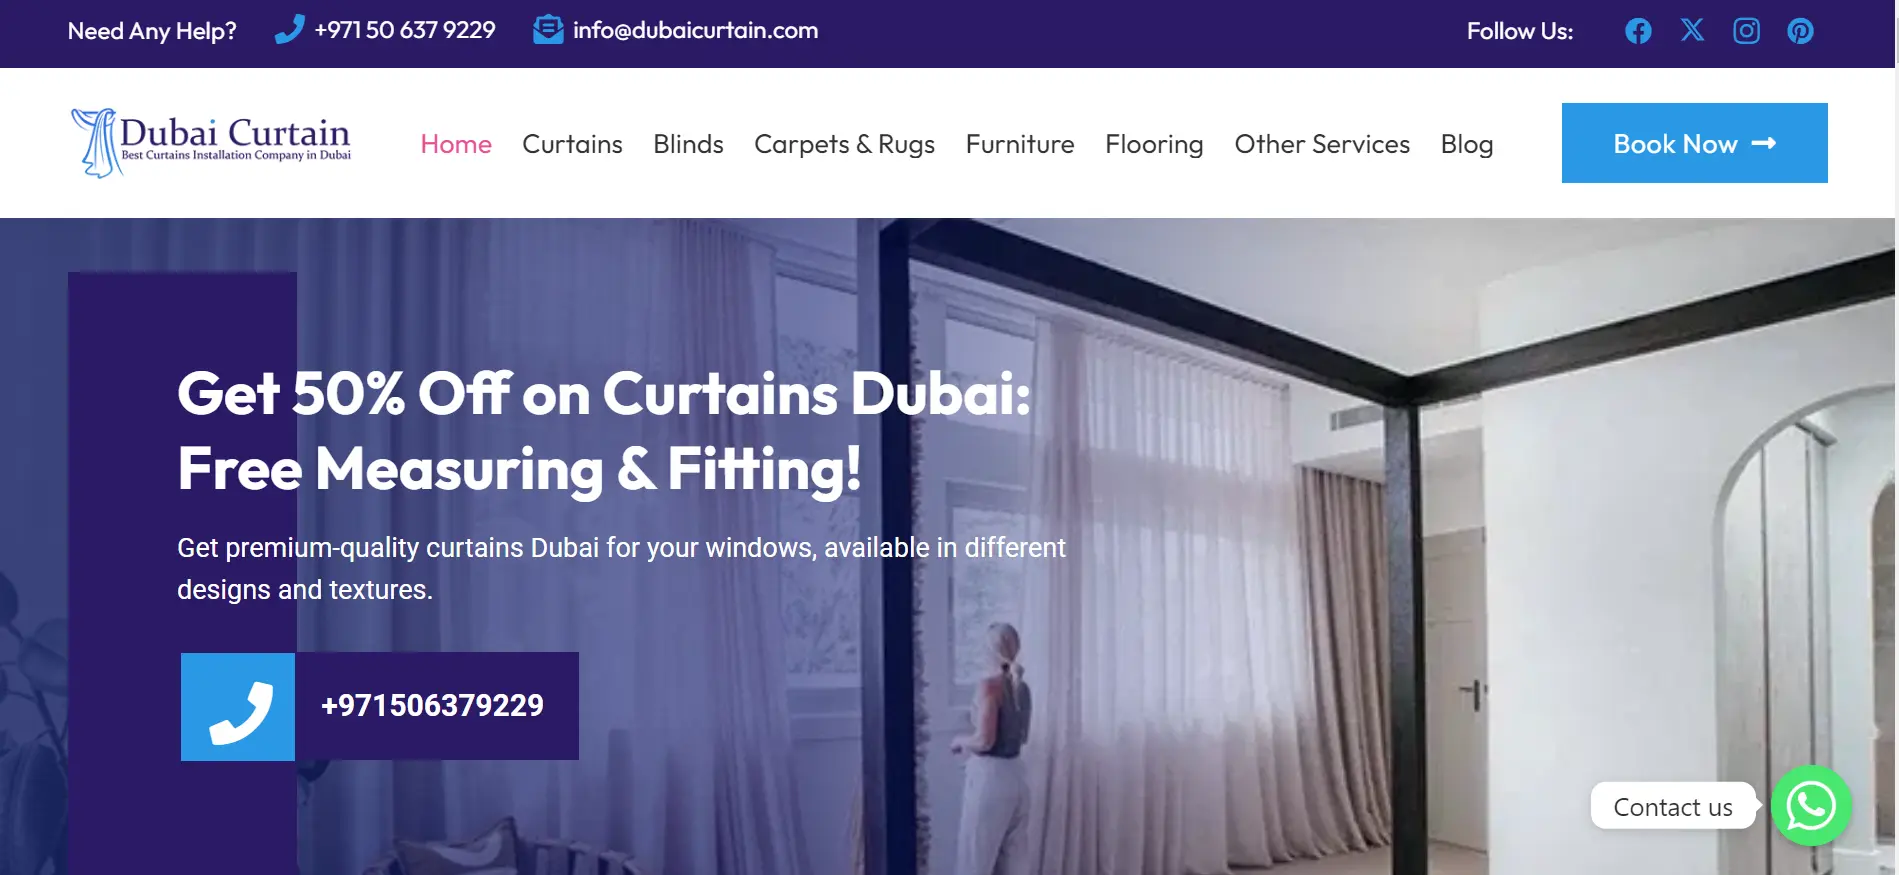 Dubaicurtain.com